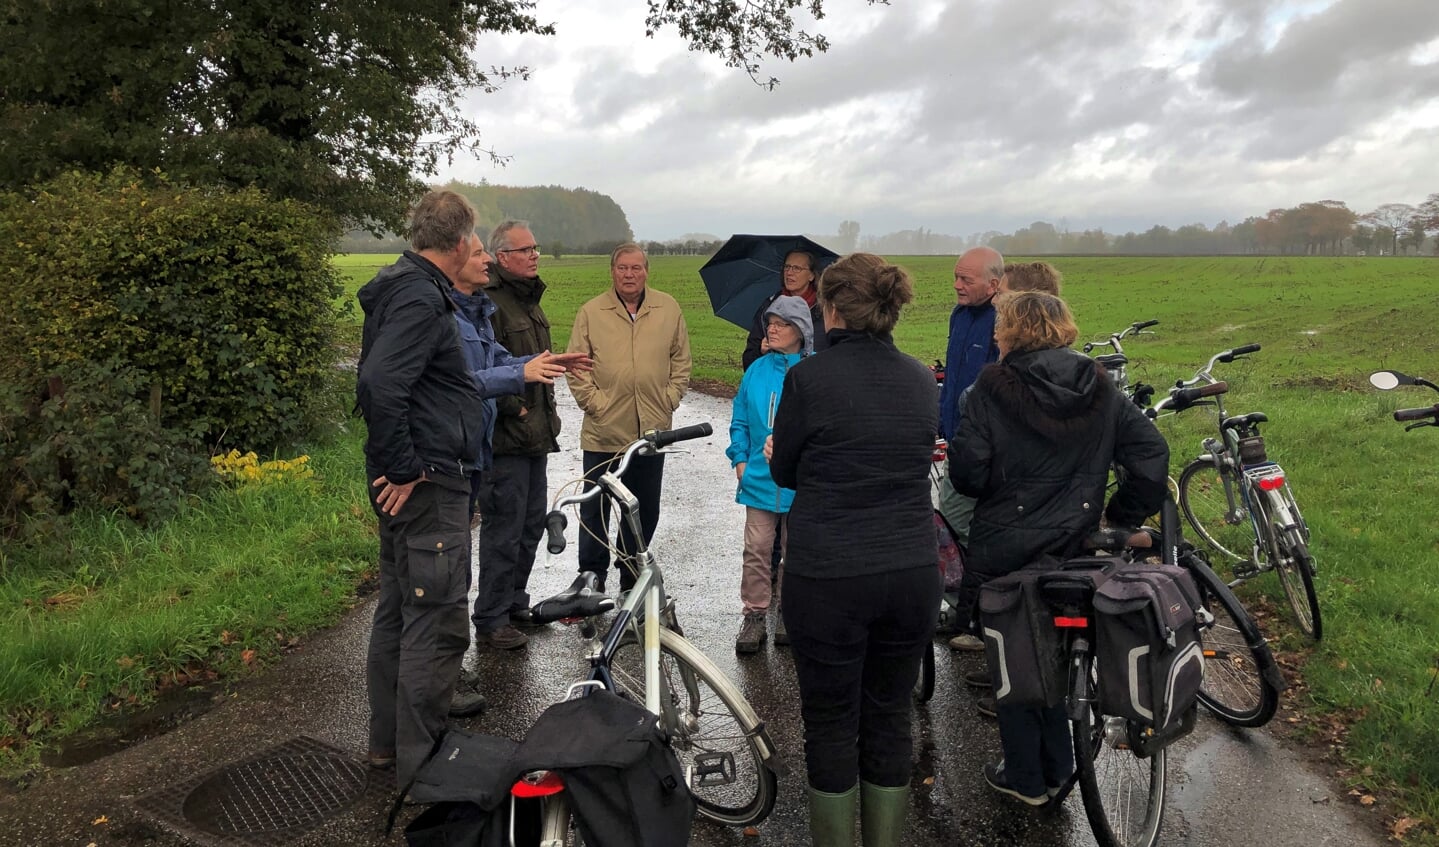 De route begon (in de regen) bij landgoed Het Meenink in Hengelo, dat normaal gesloten is voor publiek. Foto: Gerlinde Bulten